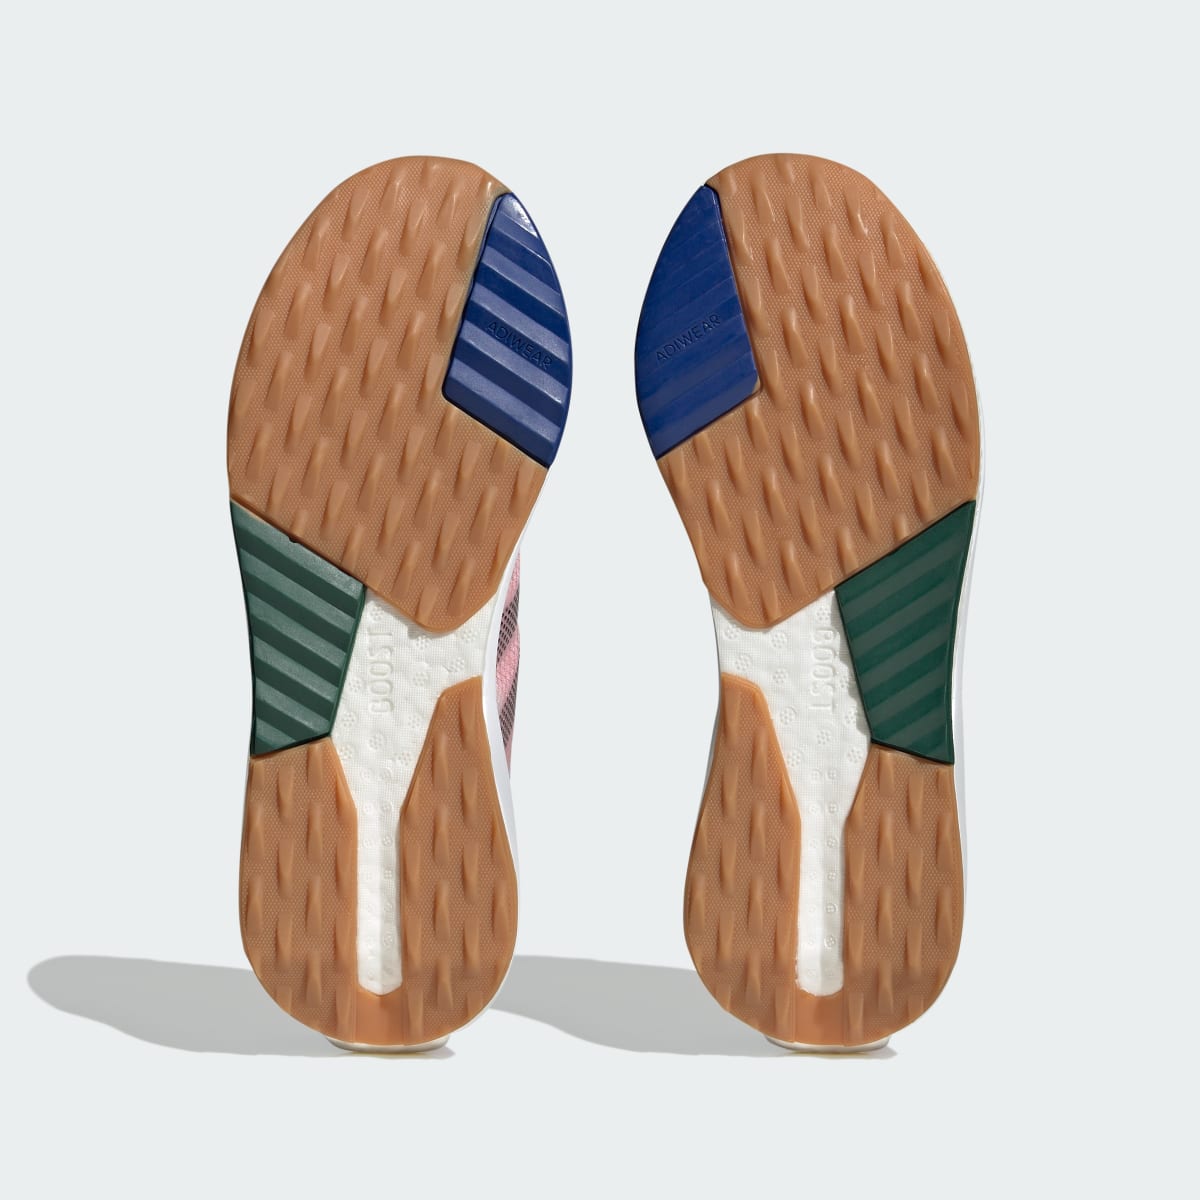 Adidas Zapatilla Avryn. 4